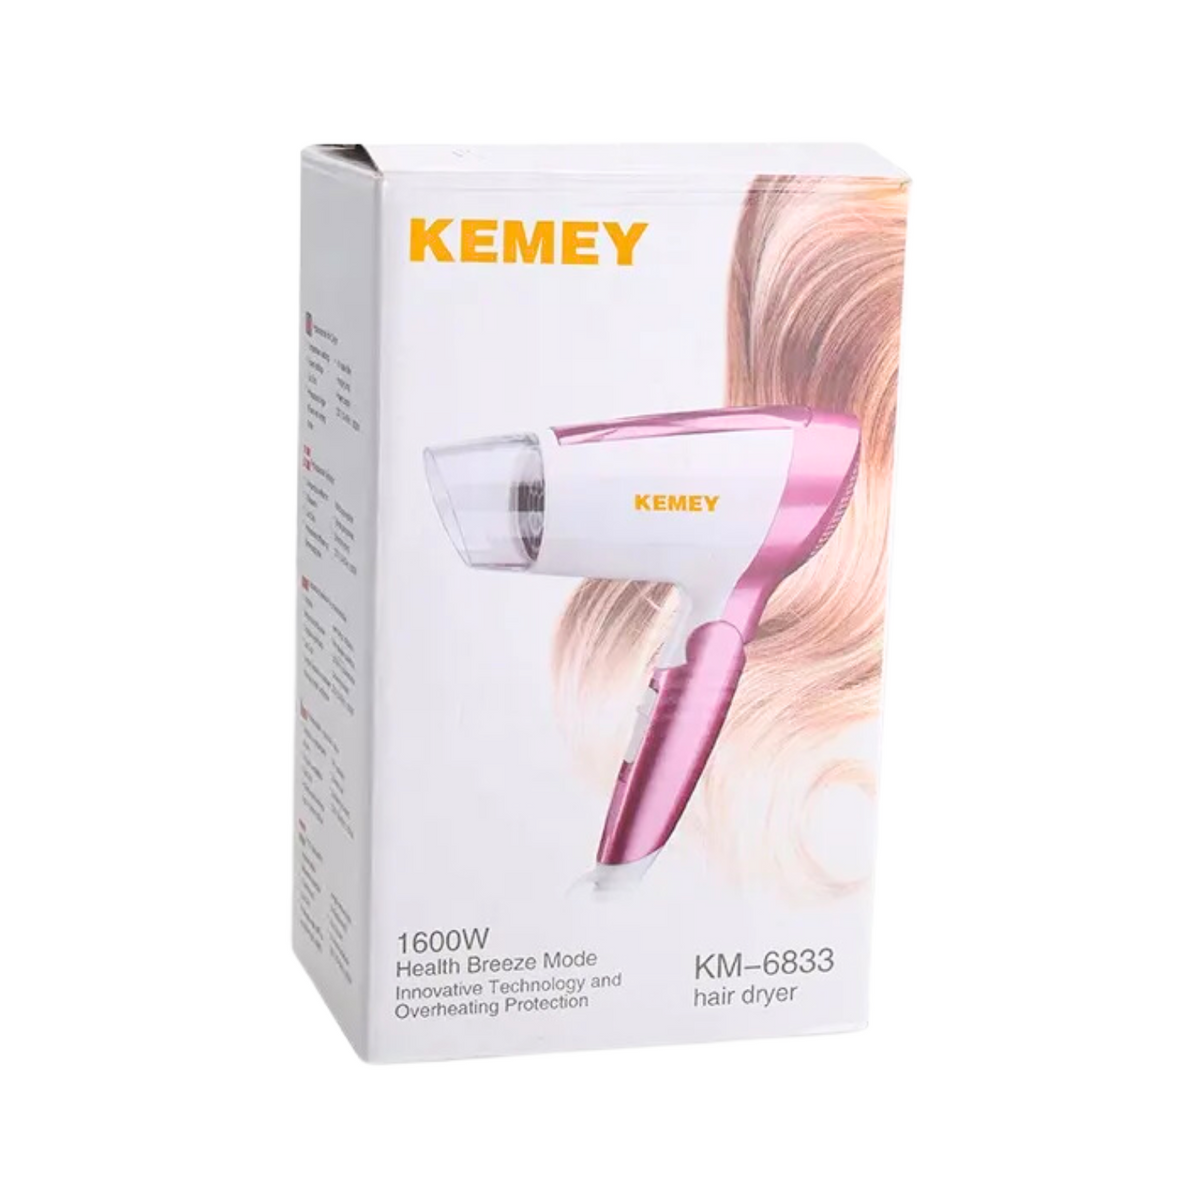 kemei-1600w-professional-hair-dryer-km-6833